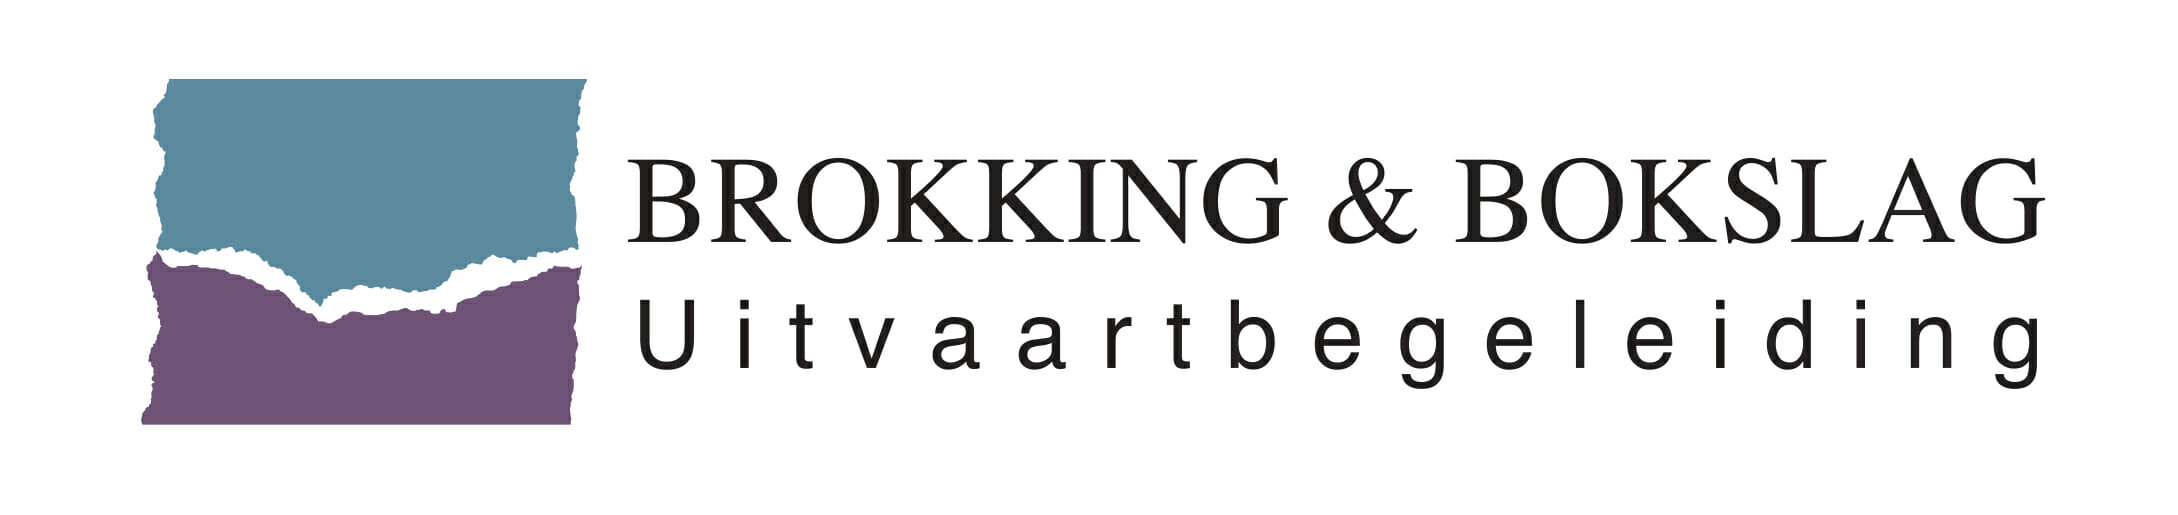 Brokking & Bokslag Uitvaartbegeleiding